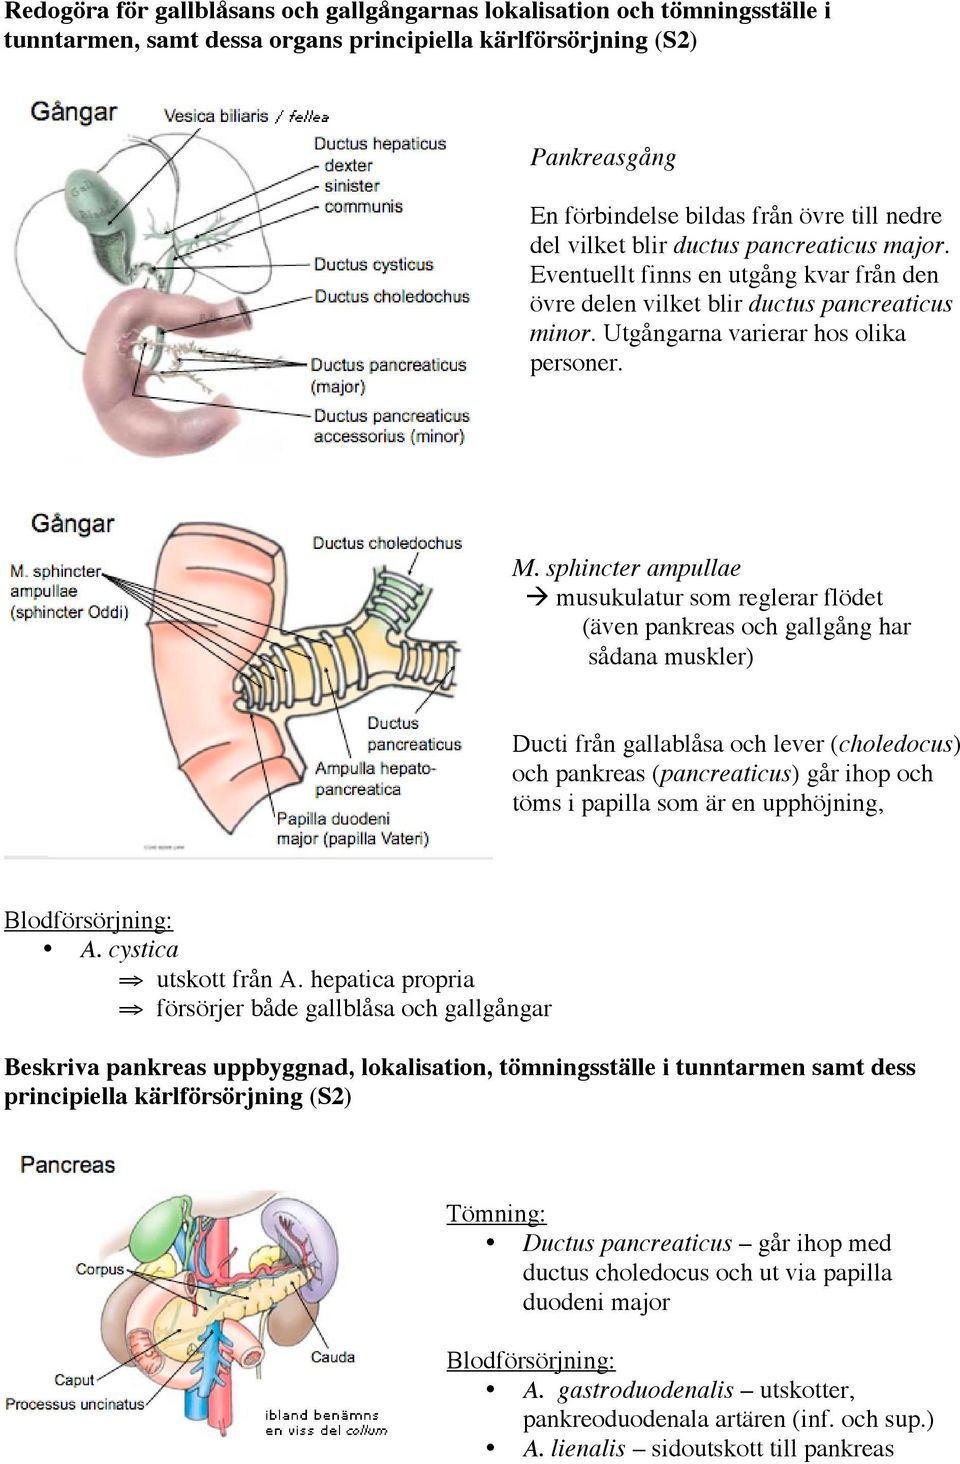 sphincter ampullae musukulatur som reglerar flödet (även pankreas och gallgång har sådana muskler) Ducti från gallablåsa och lever (choledocus) och pankreas (pancreaticus) går ihop och töms i papilla